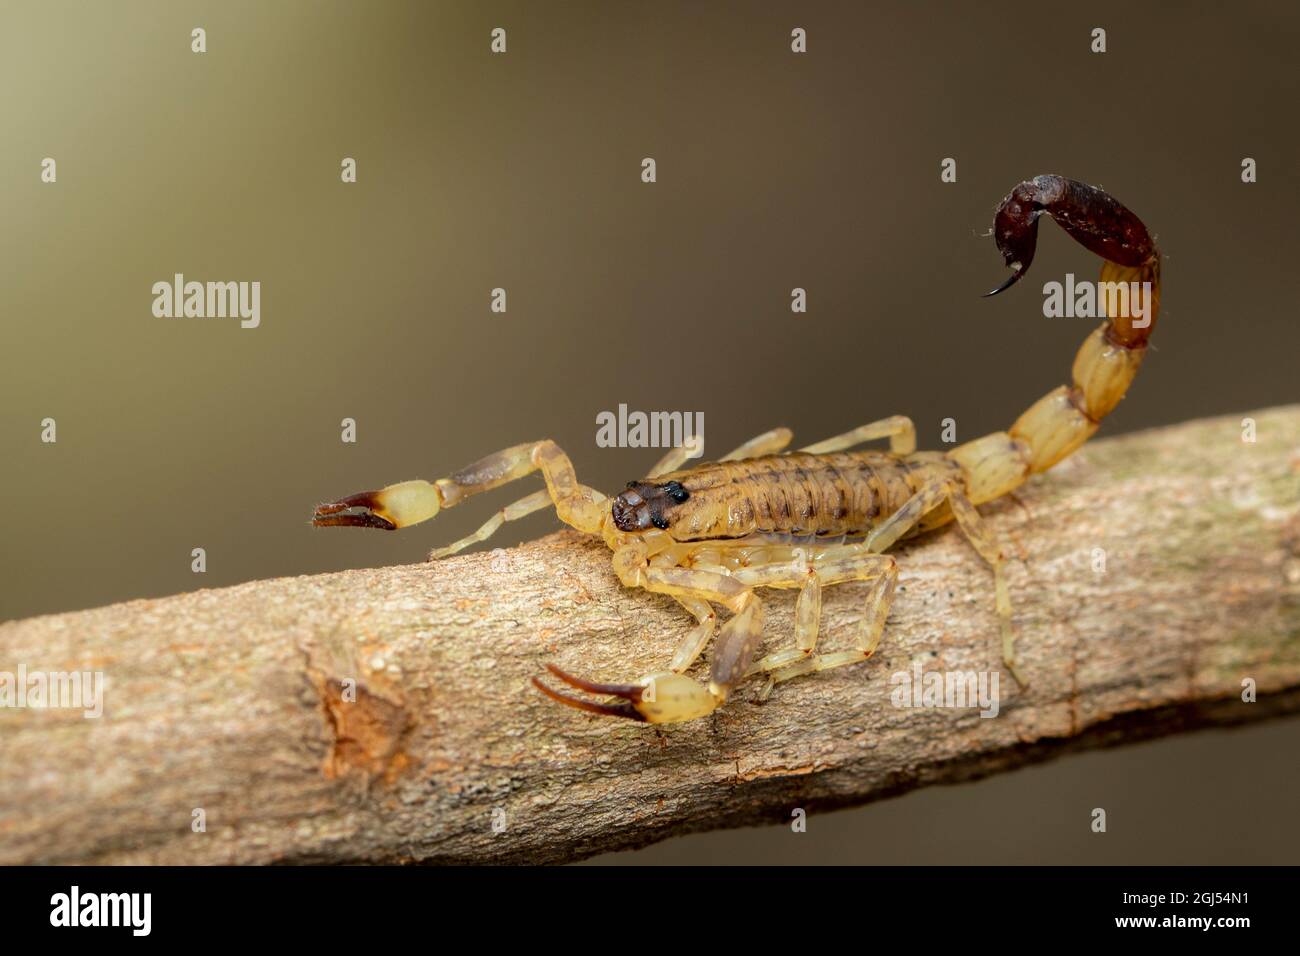 Bild eines braunen Skorpions auf einem braunen trockenen Baumzweig. Insekt. Tier. Stockfoto